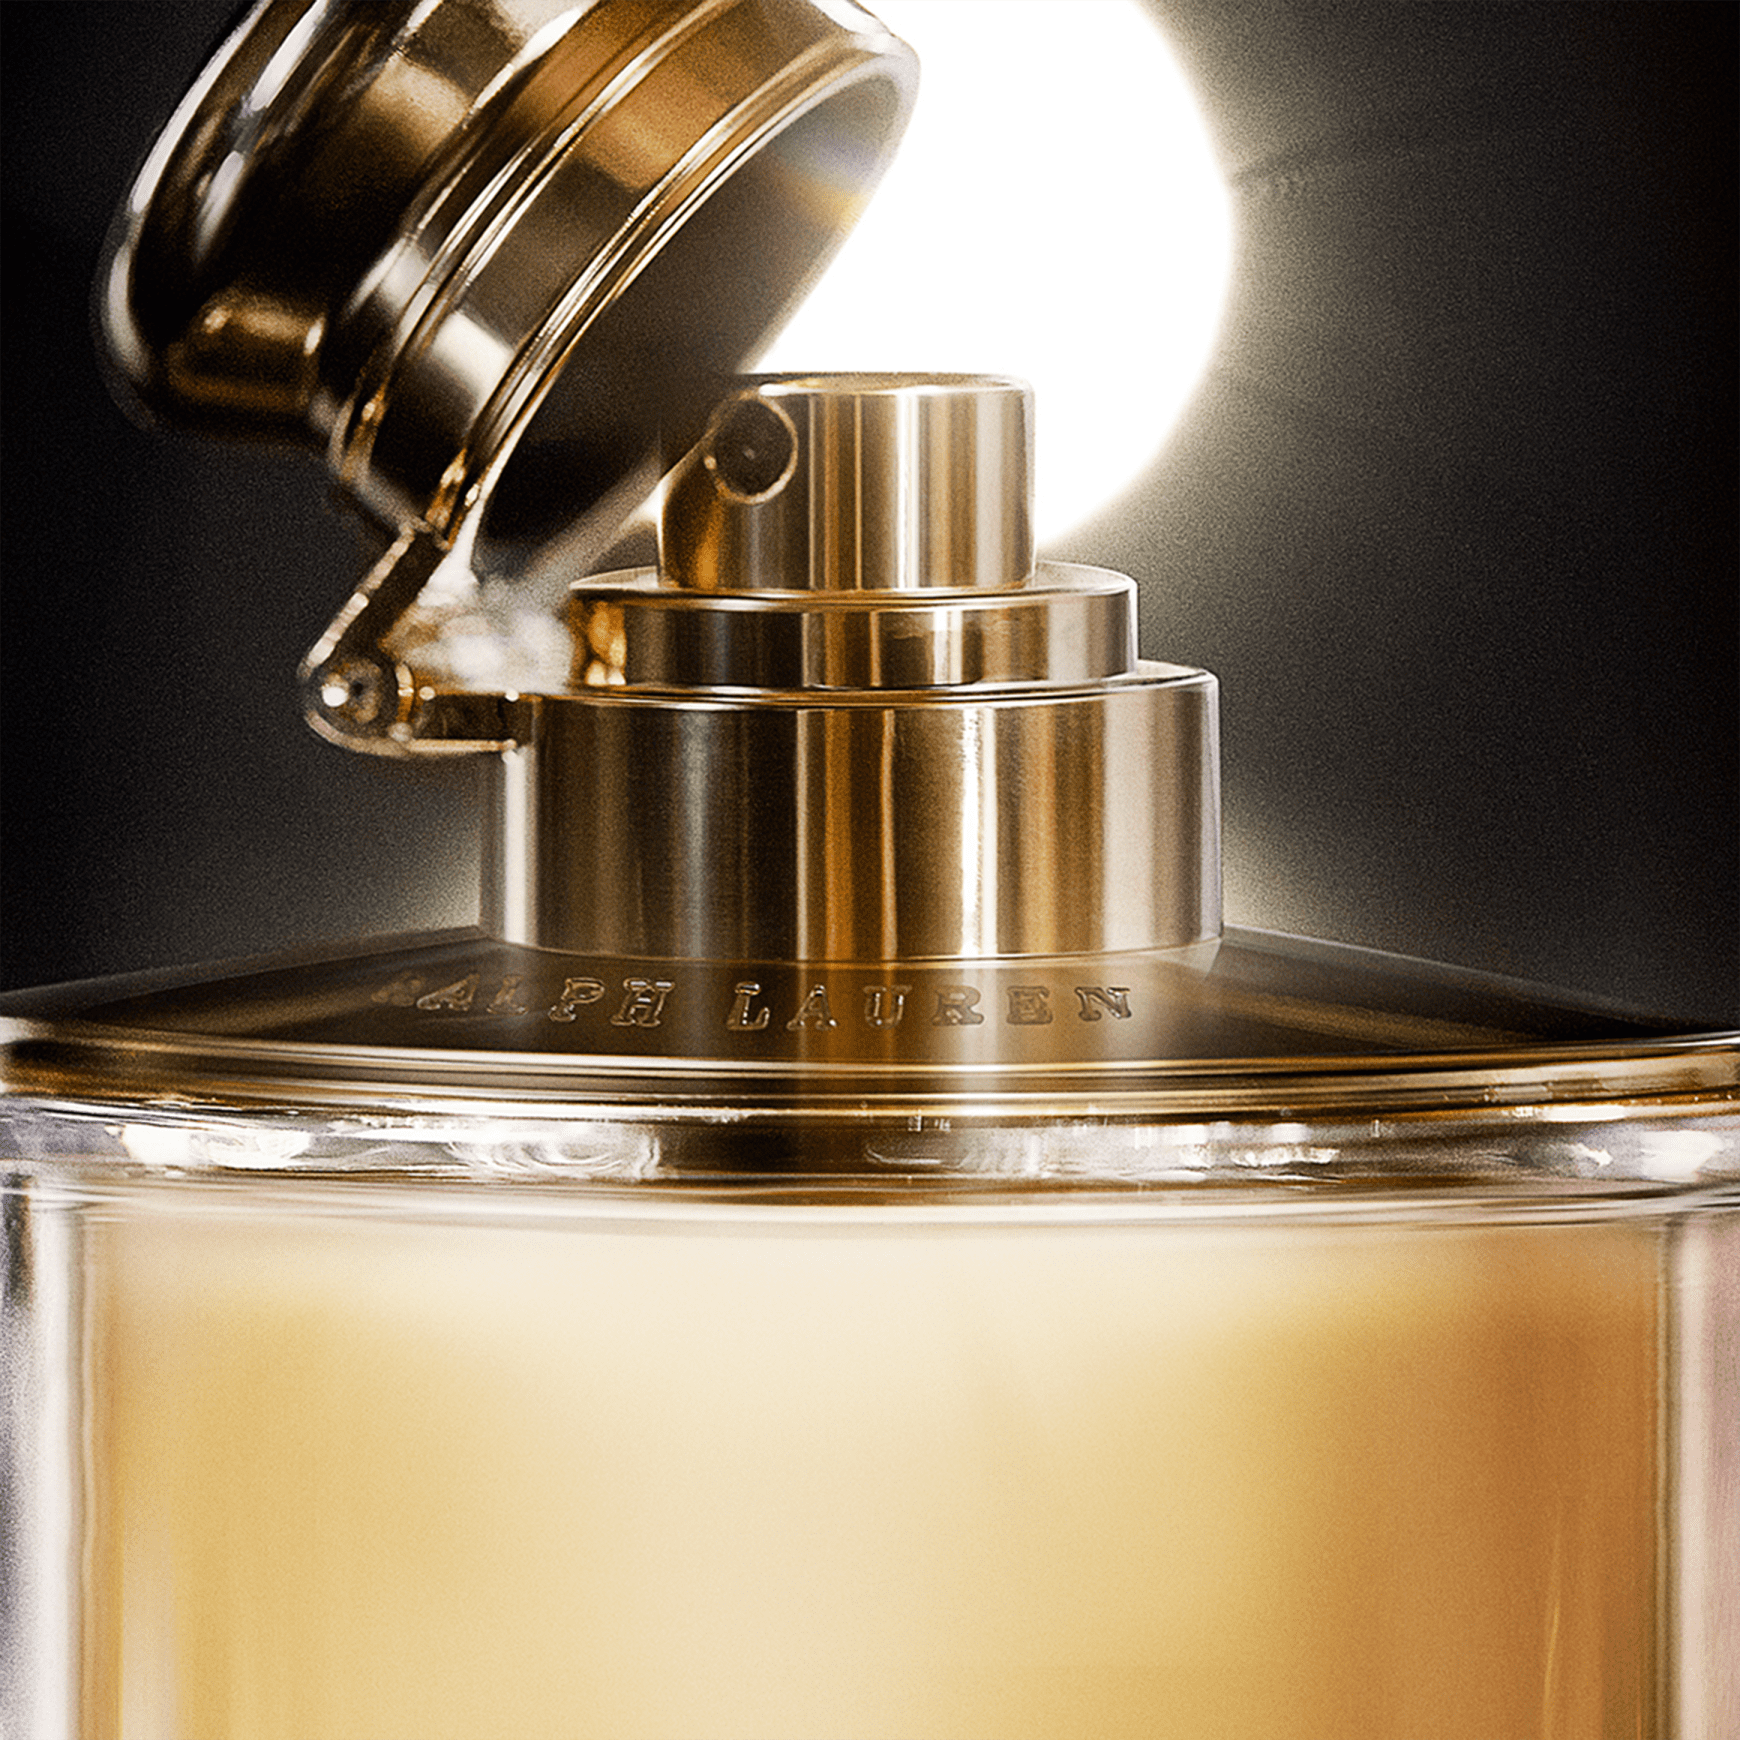 Perfume Woman by Ralph Lauren Feminino